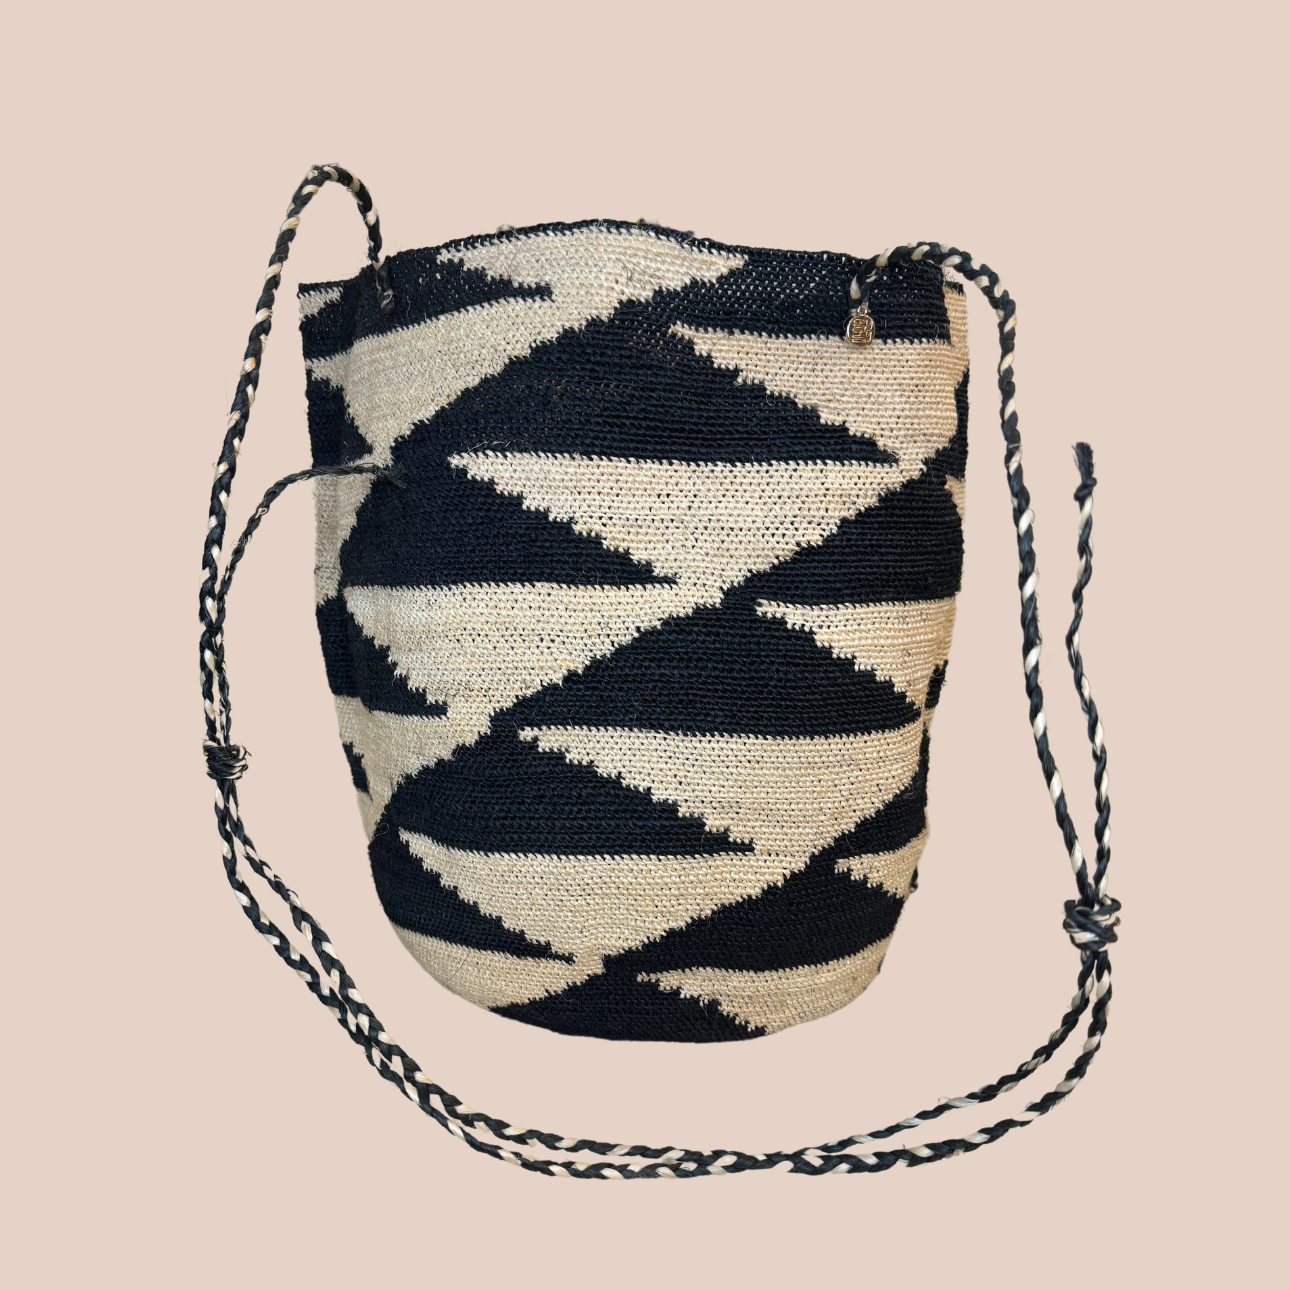  Image du sac PLAYA de Maison Badigo, sac en fibres de cactus multicolore unique et tendance